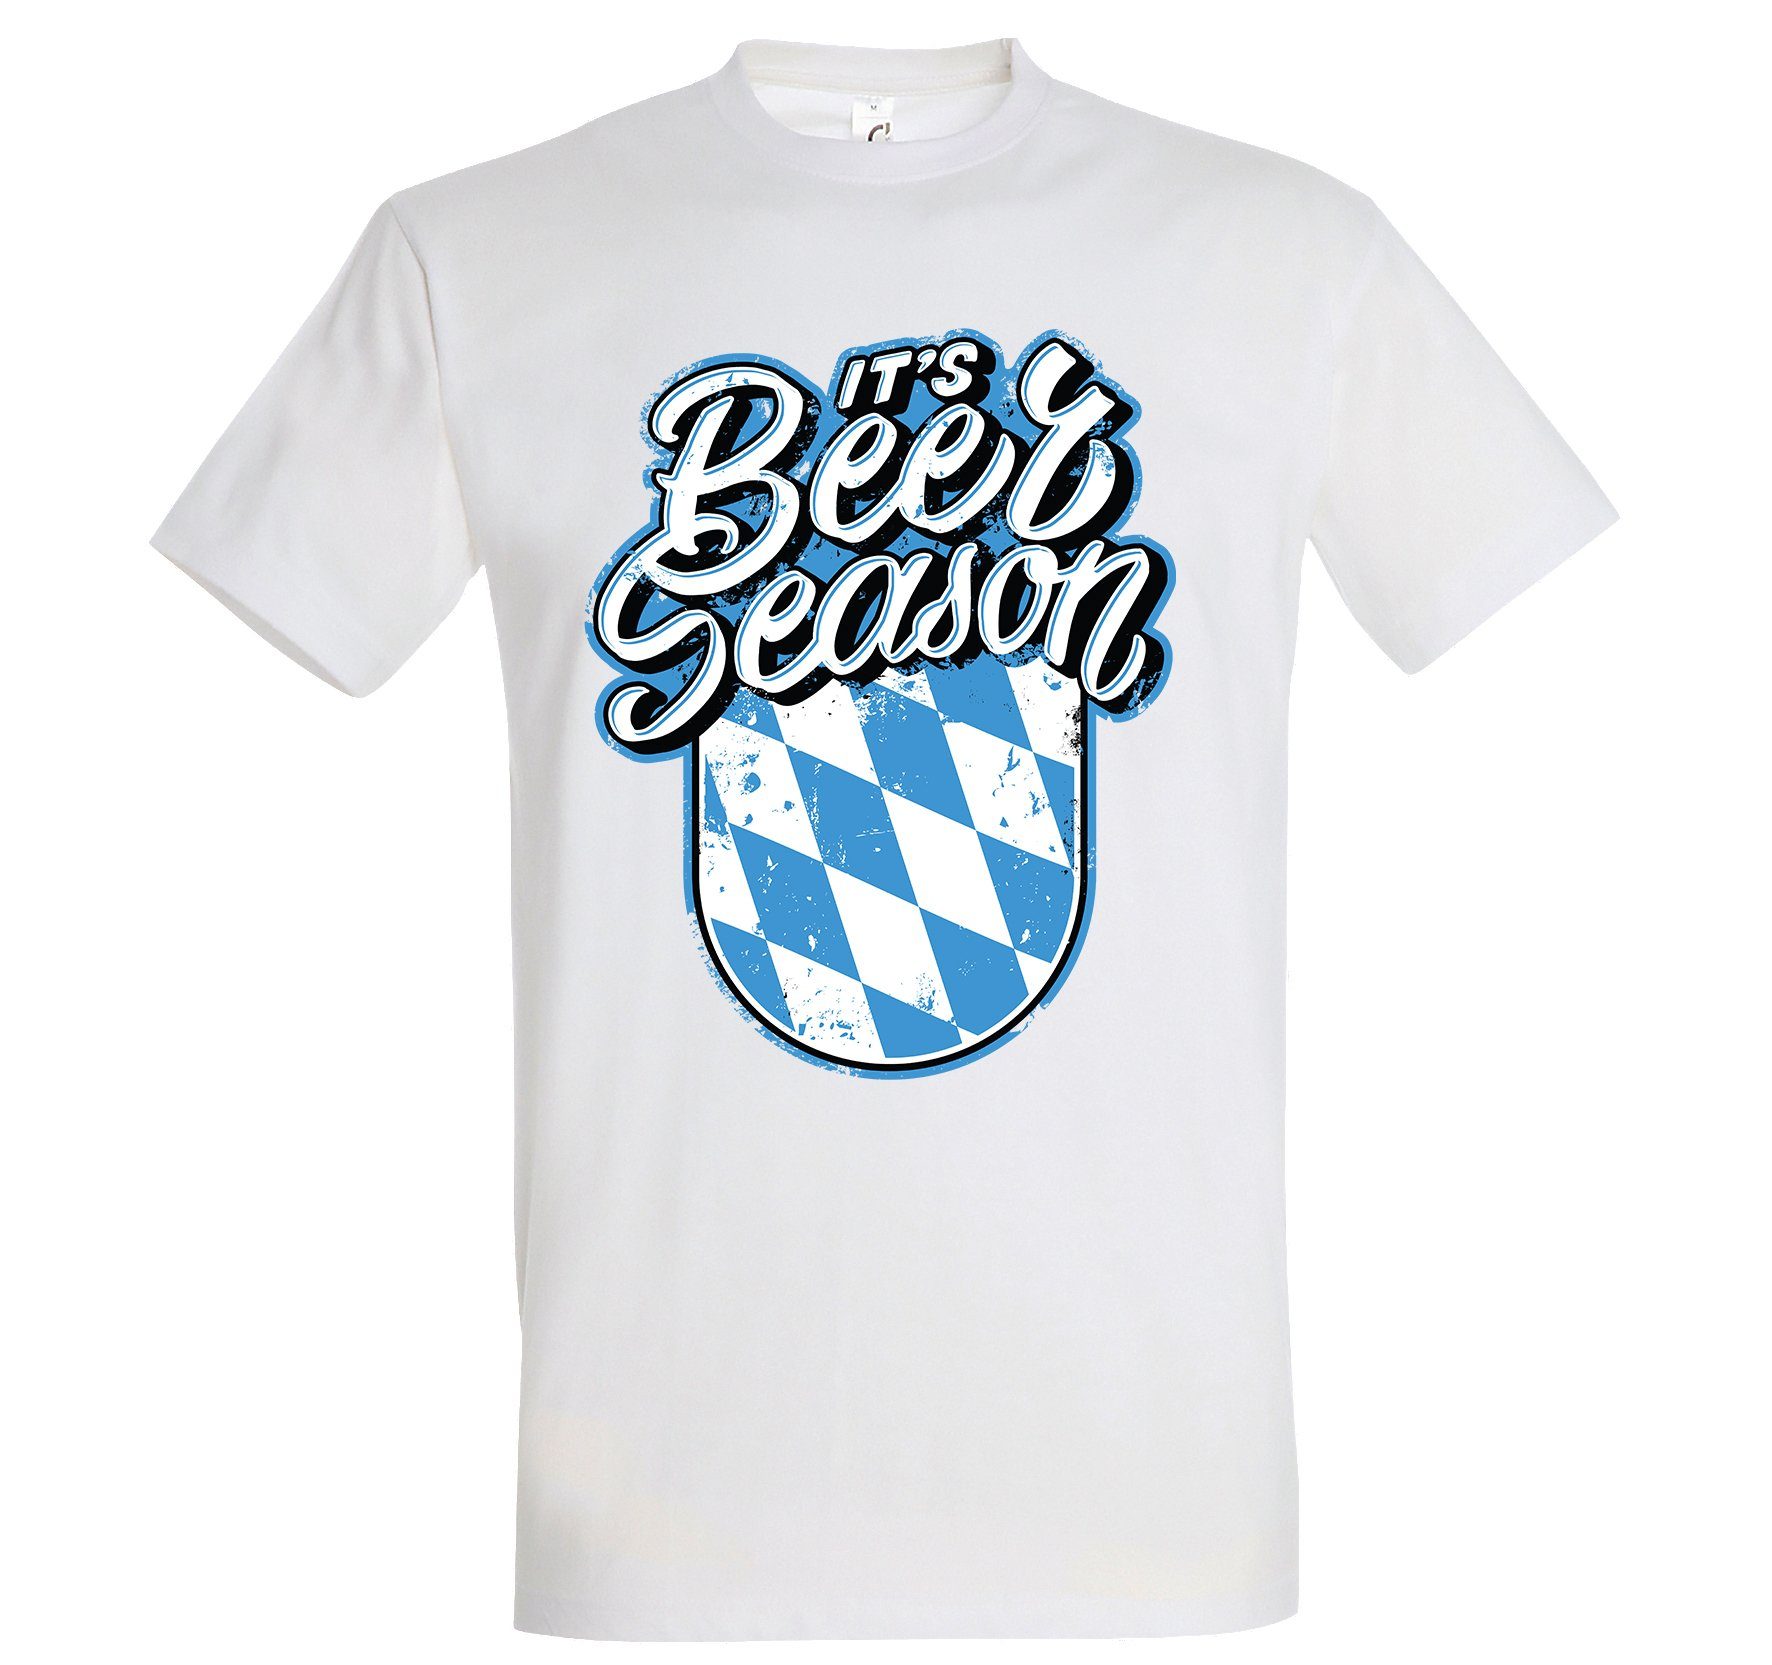 Herren T-Shirt Shirt mit Frontprint Weiß Bayern Season Designz Beer Youth trendigem